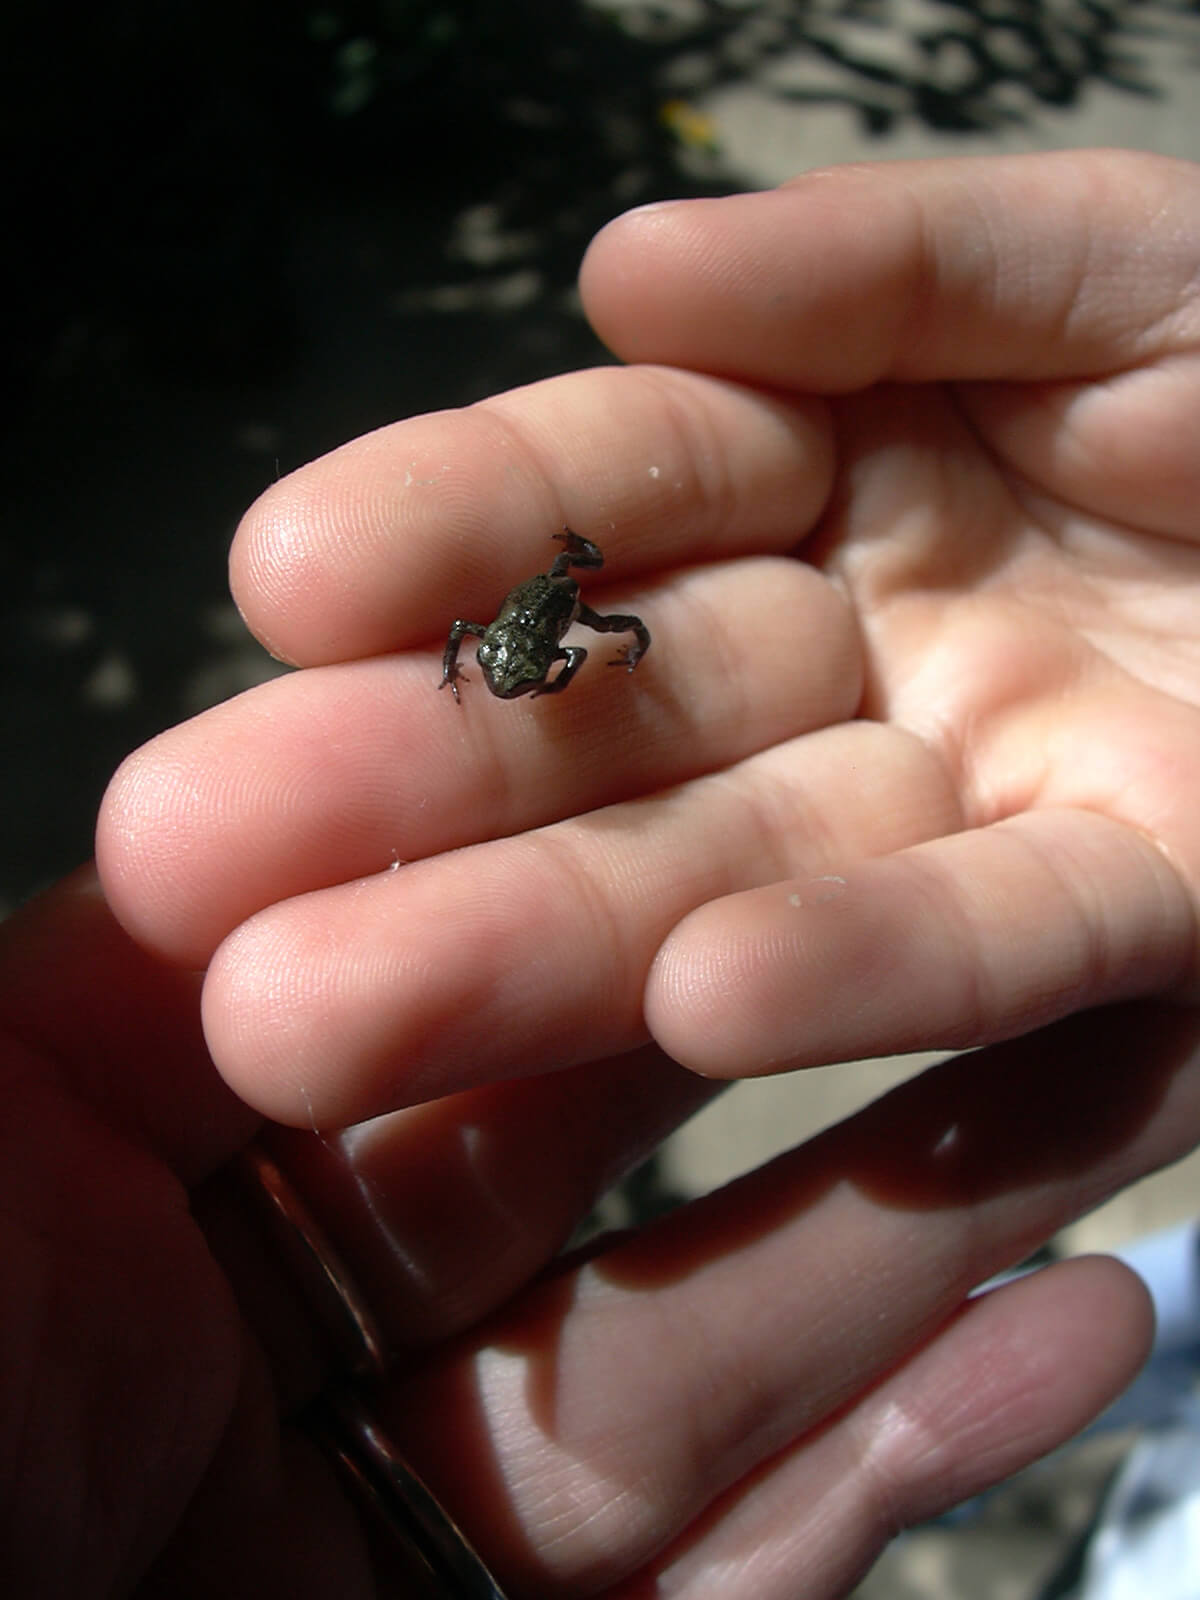 公園の池から捕ってきたカエルのタマゴから孵った、1.5センチくらいの小さな黒いカエル